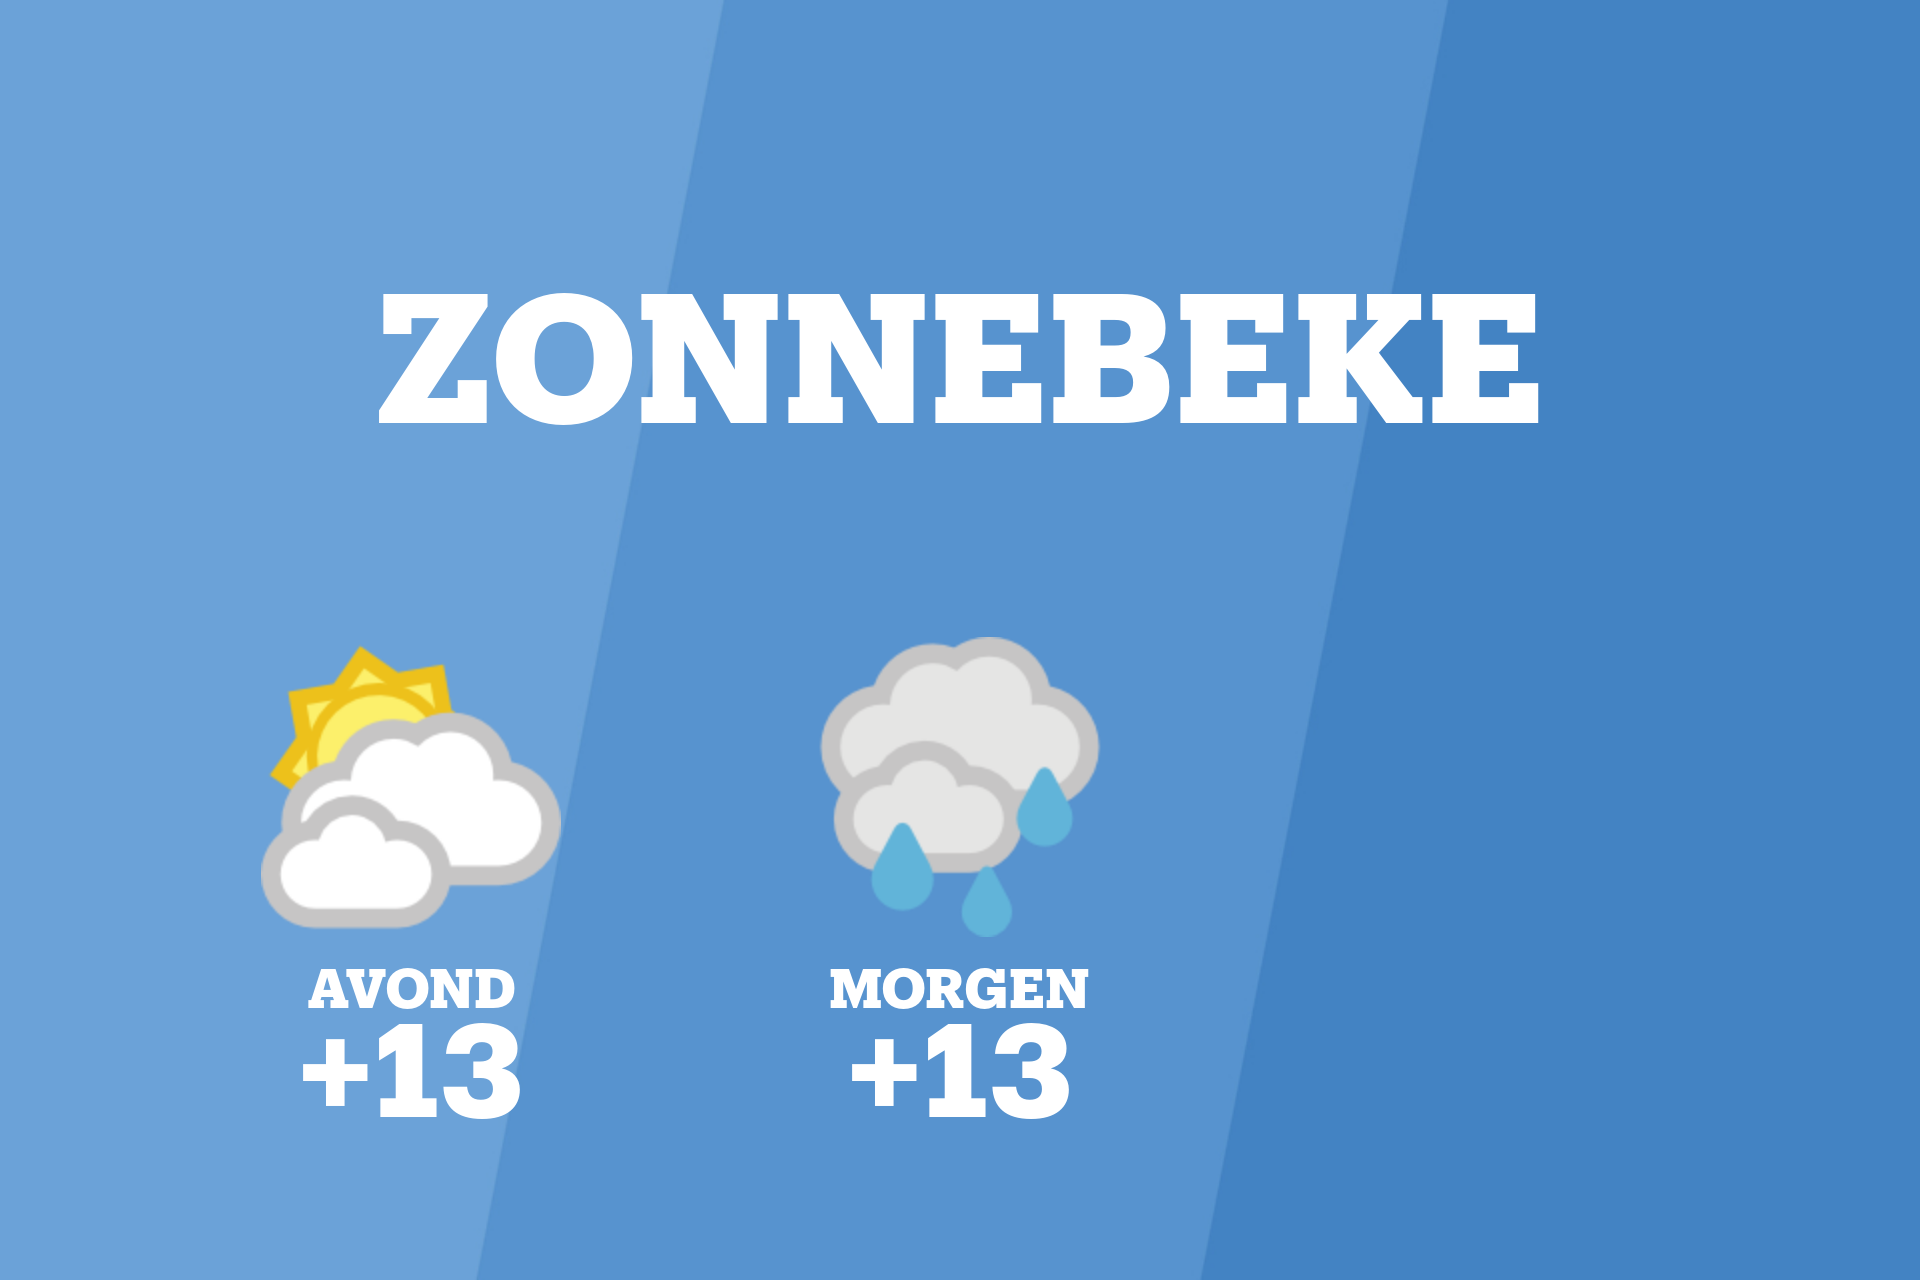 Vanavond kans op bewolkt weer in Zonnebeke